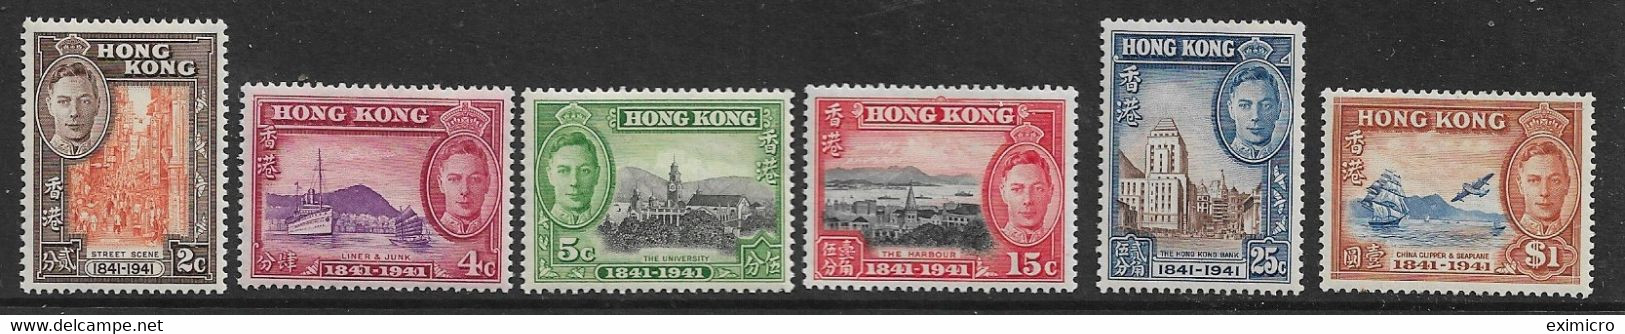 HONG KONG 1941 CENTENARY OF BRITISH OCCUPATION SET SG 163/168 MOUNTED MINT Cat £90 - Neufs